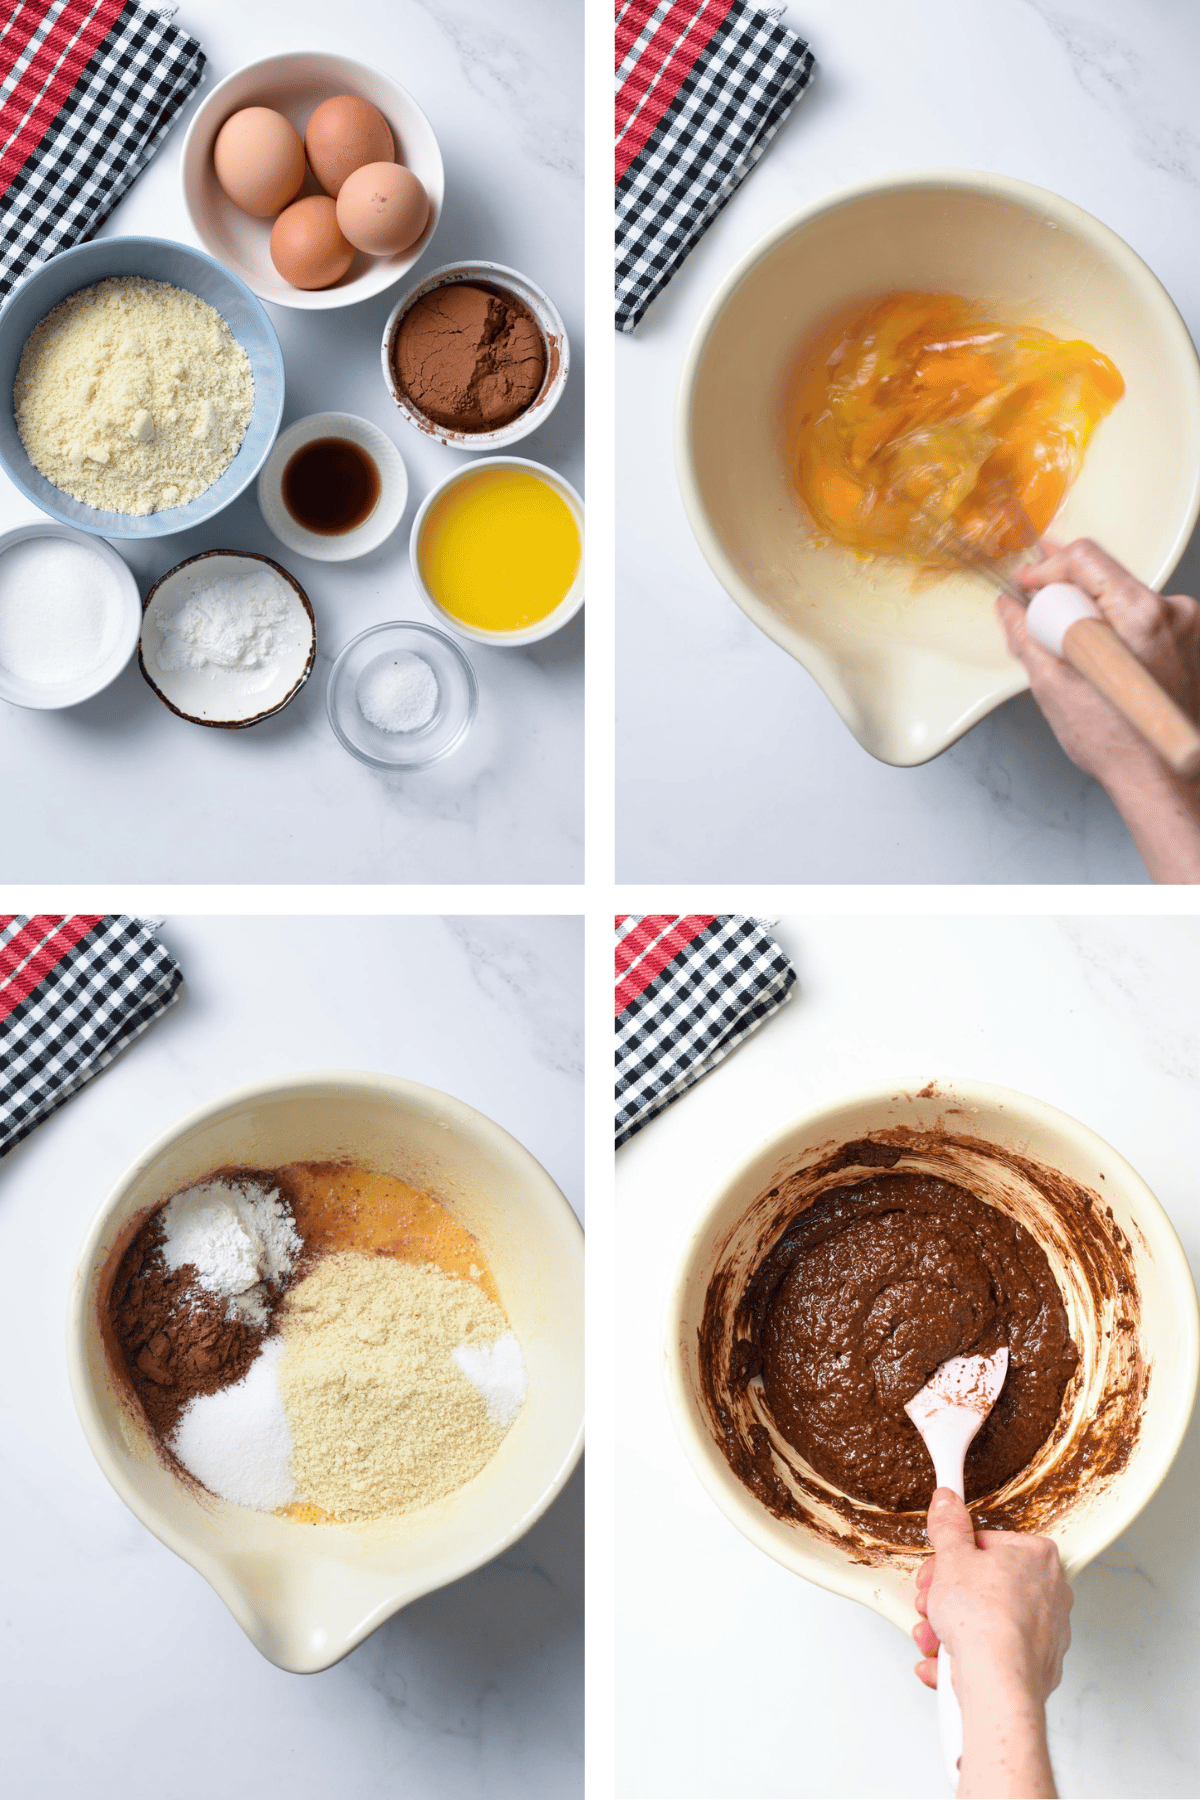 Making Keto Chocolate CakeMaking Keto Chocolate Cake